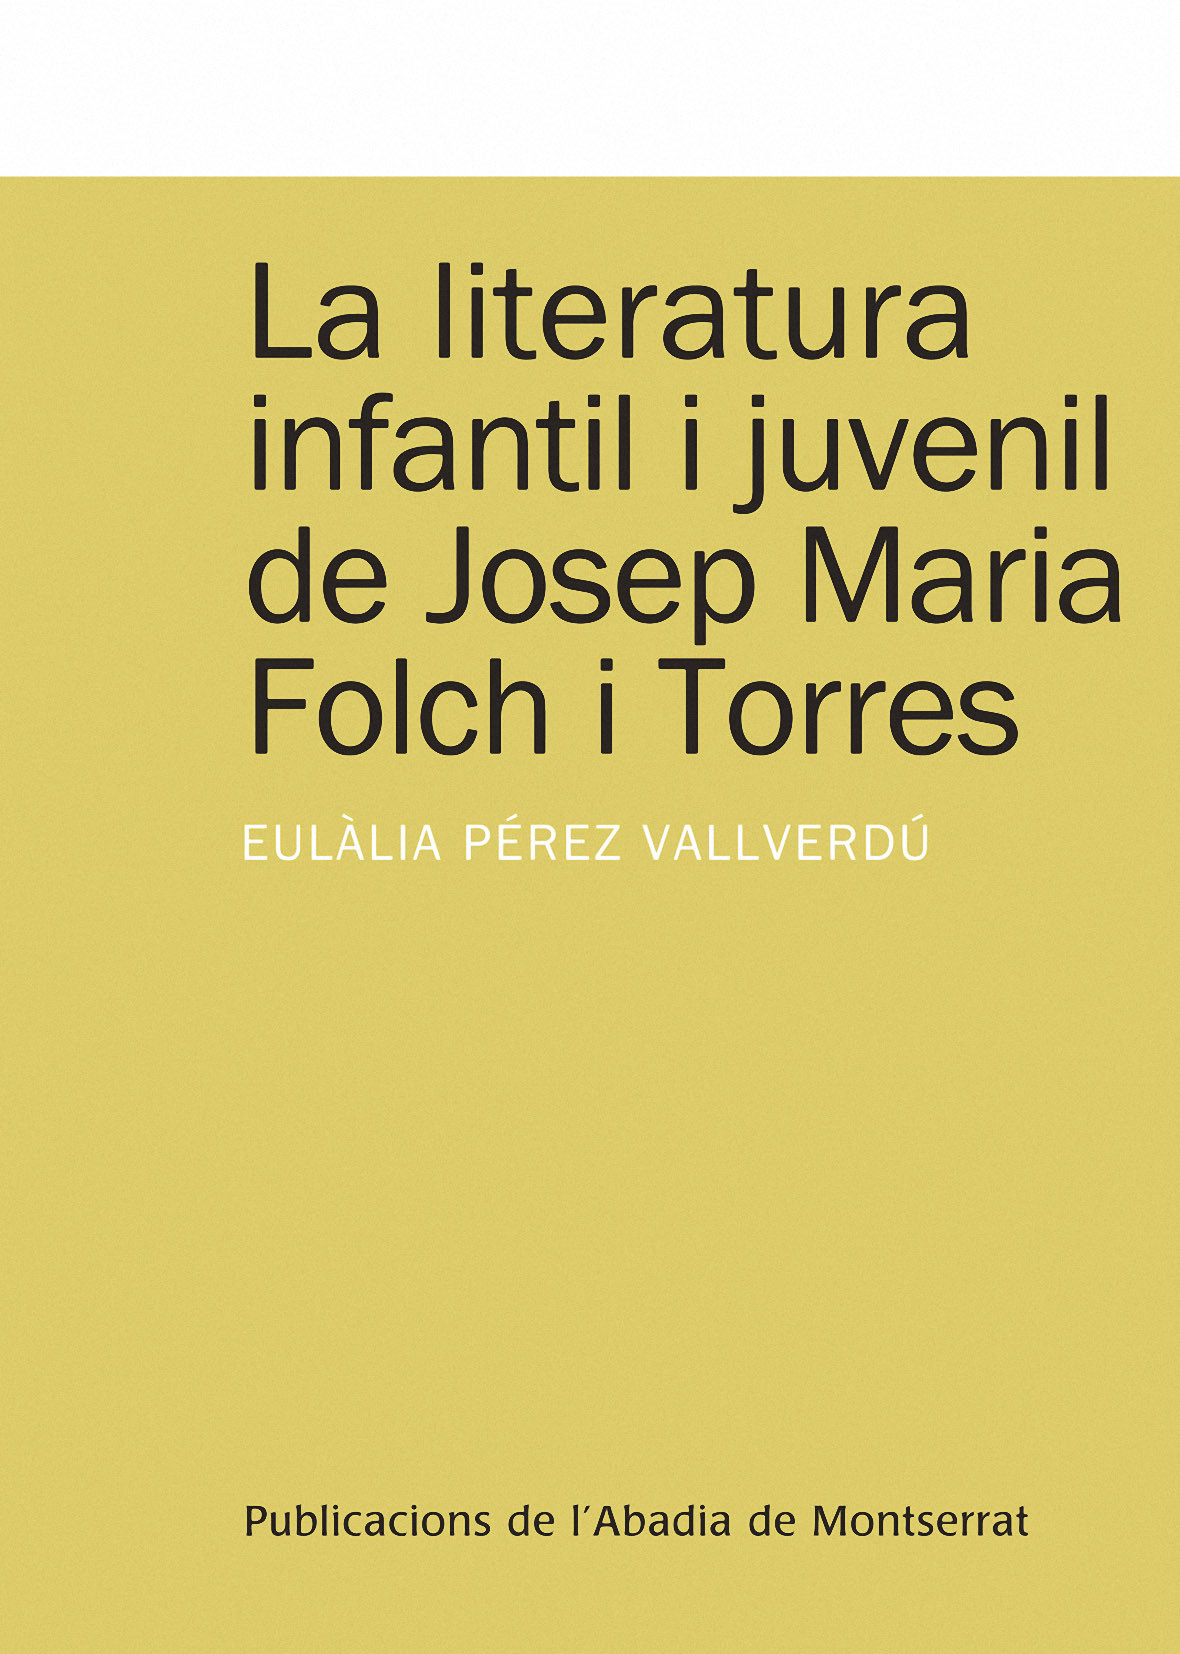 Imagen de portada del libro La literatura infantil i juvenil de Josep Maria Folch i Torres